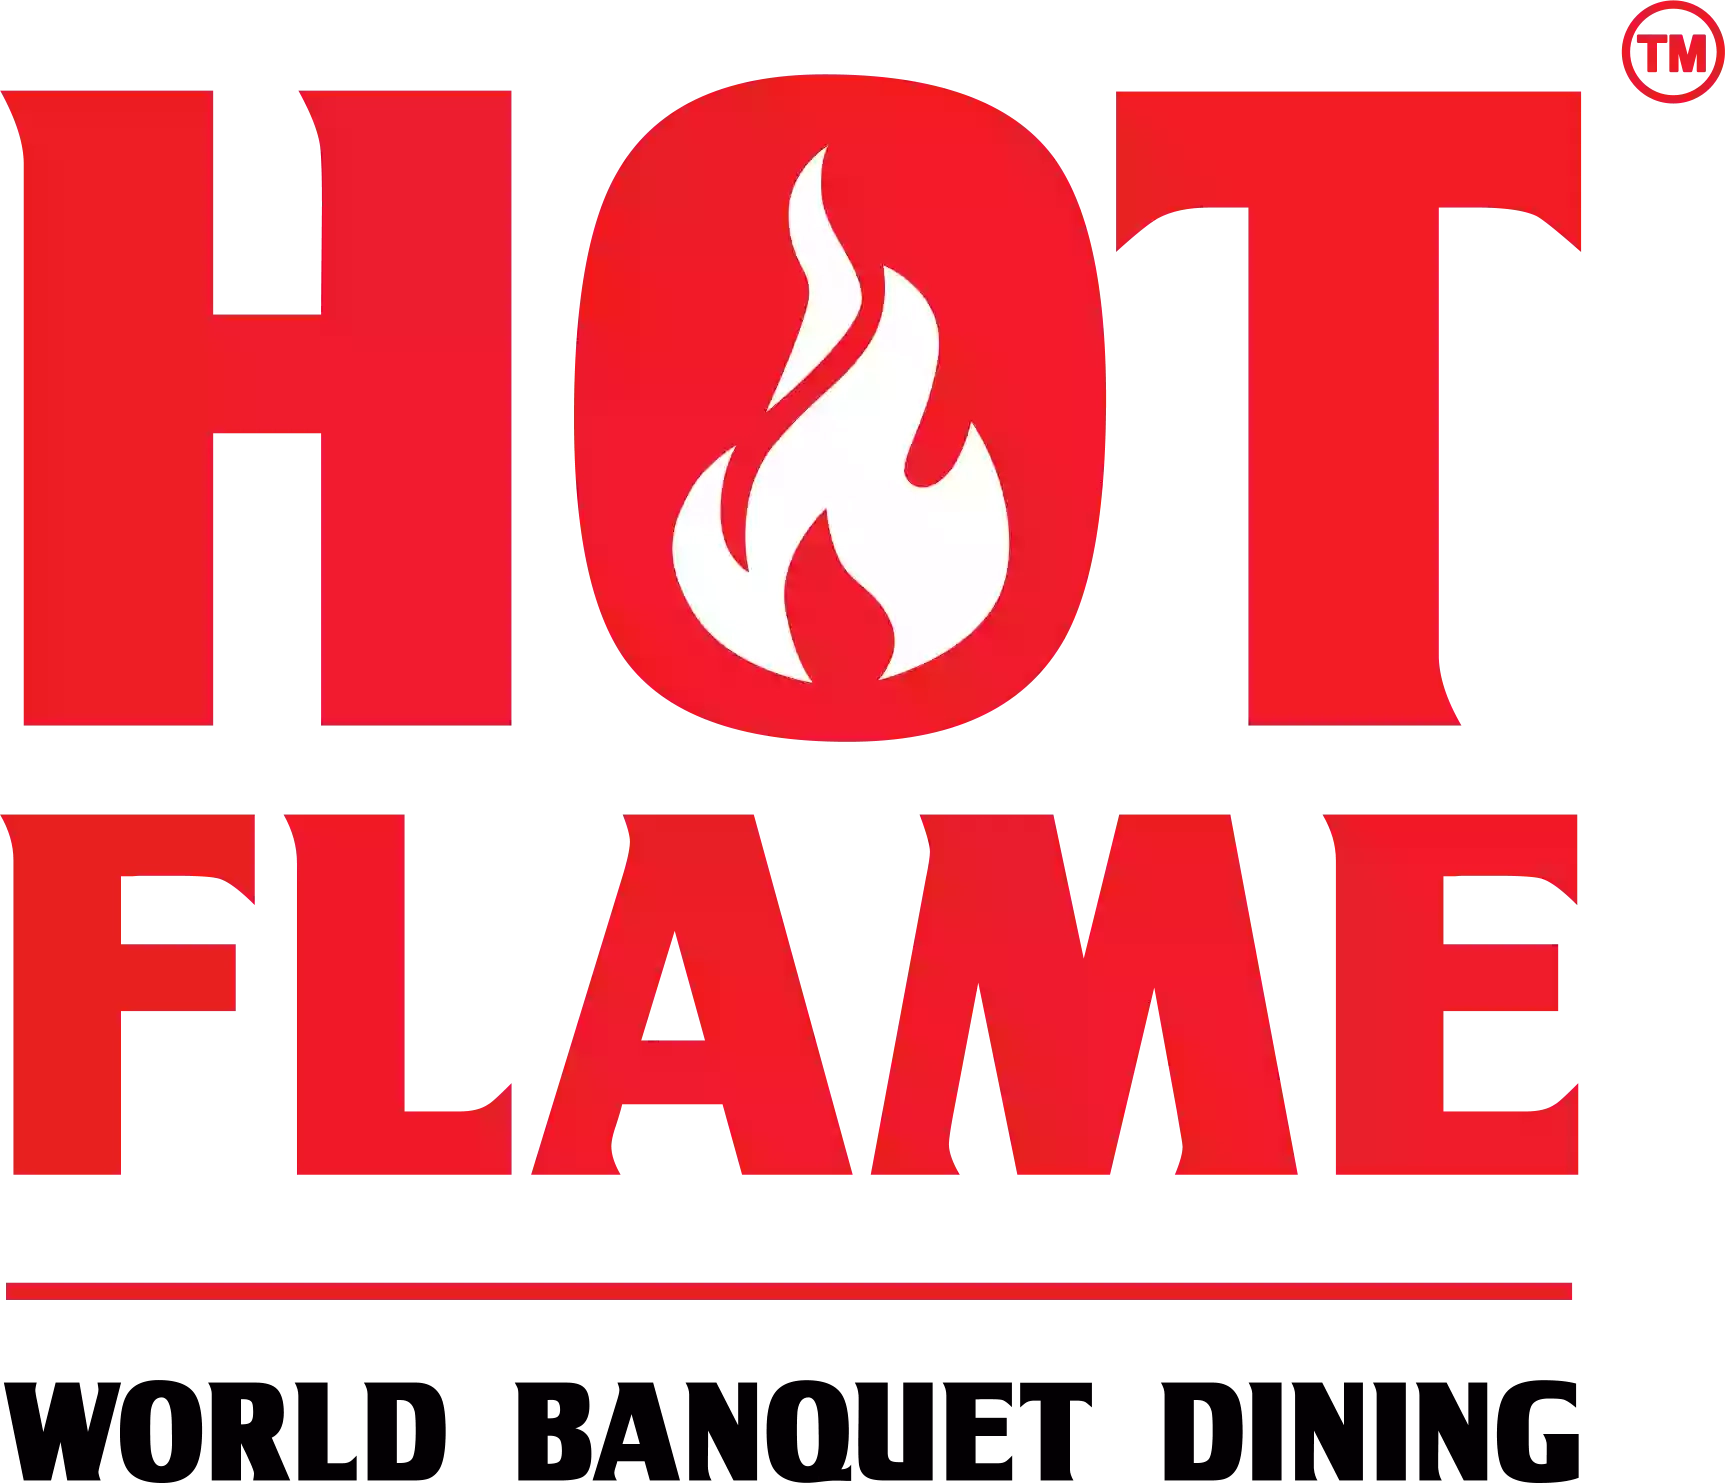 Hot Flame World Banquet